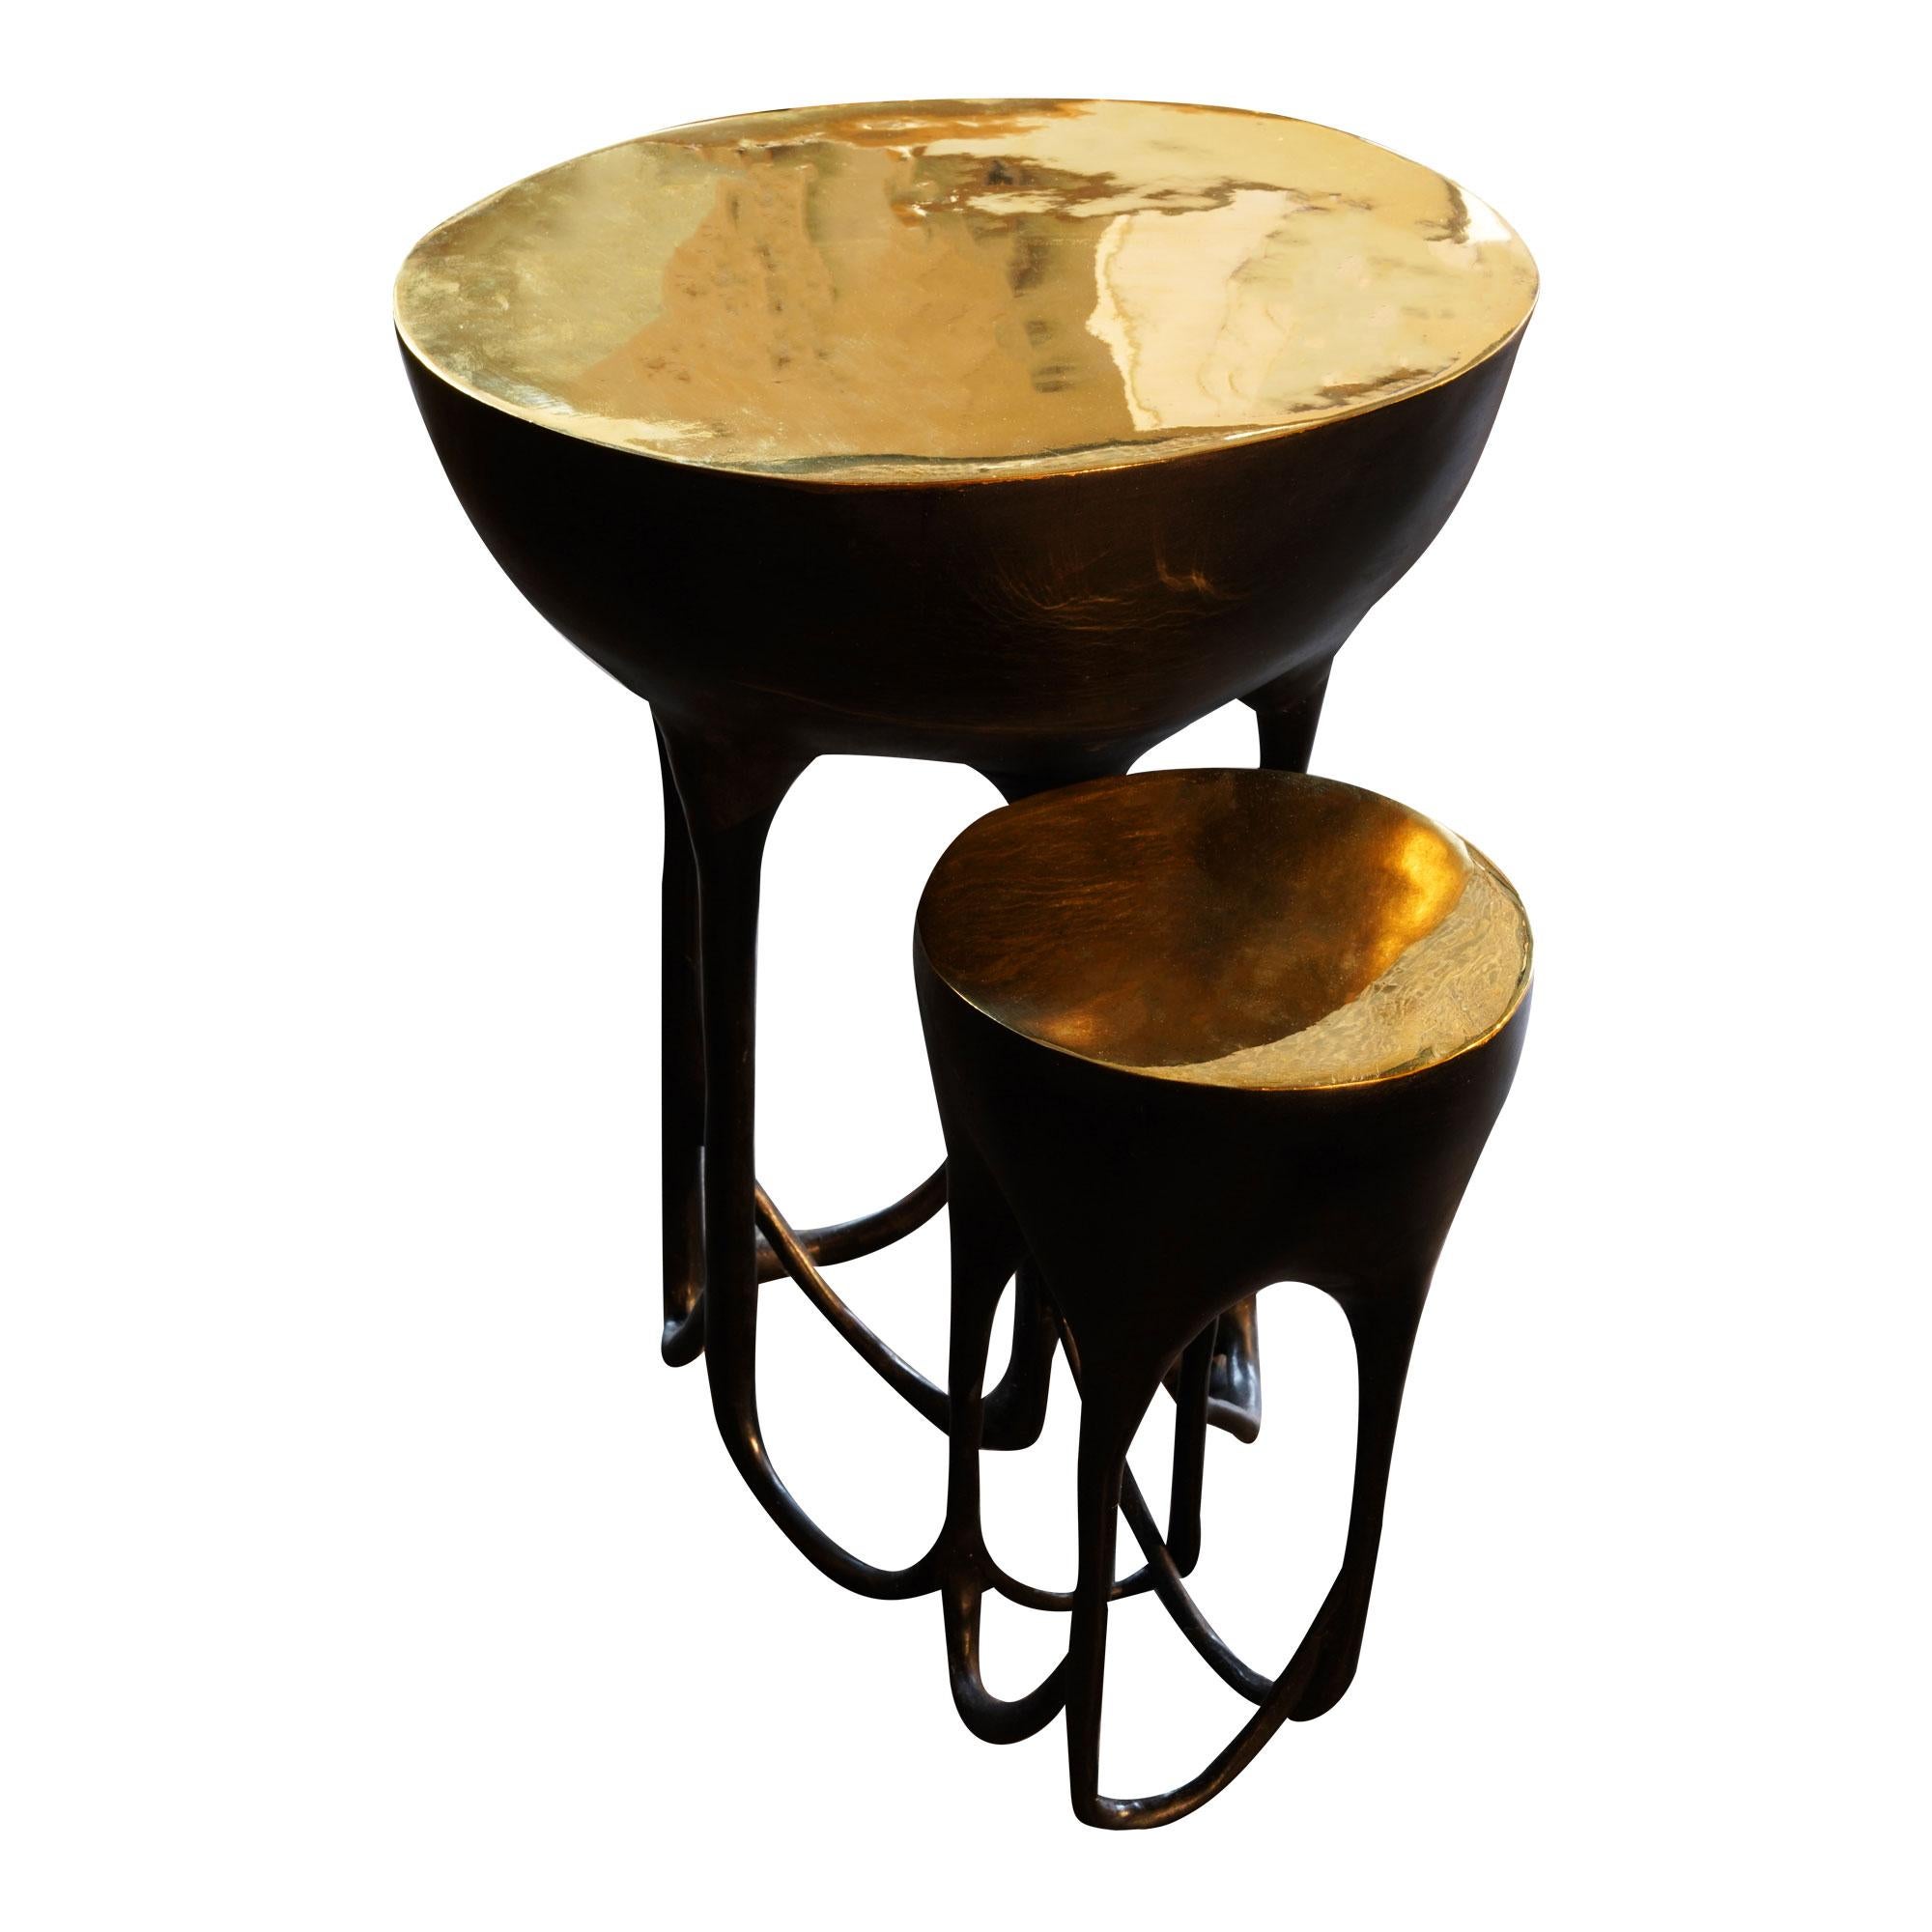 Dieser elegante und filigrane Beistelltisch ist aus polierter und geschwärzter Bronze gefertigt.

Kann angepasst werden.  Der größere Teil des Tisches ist 17